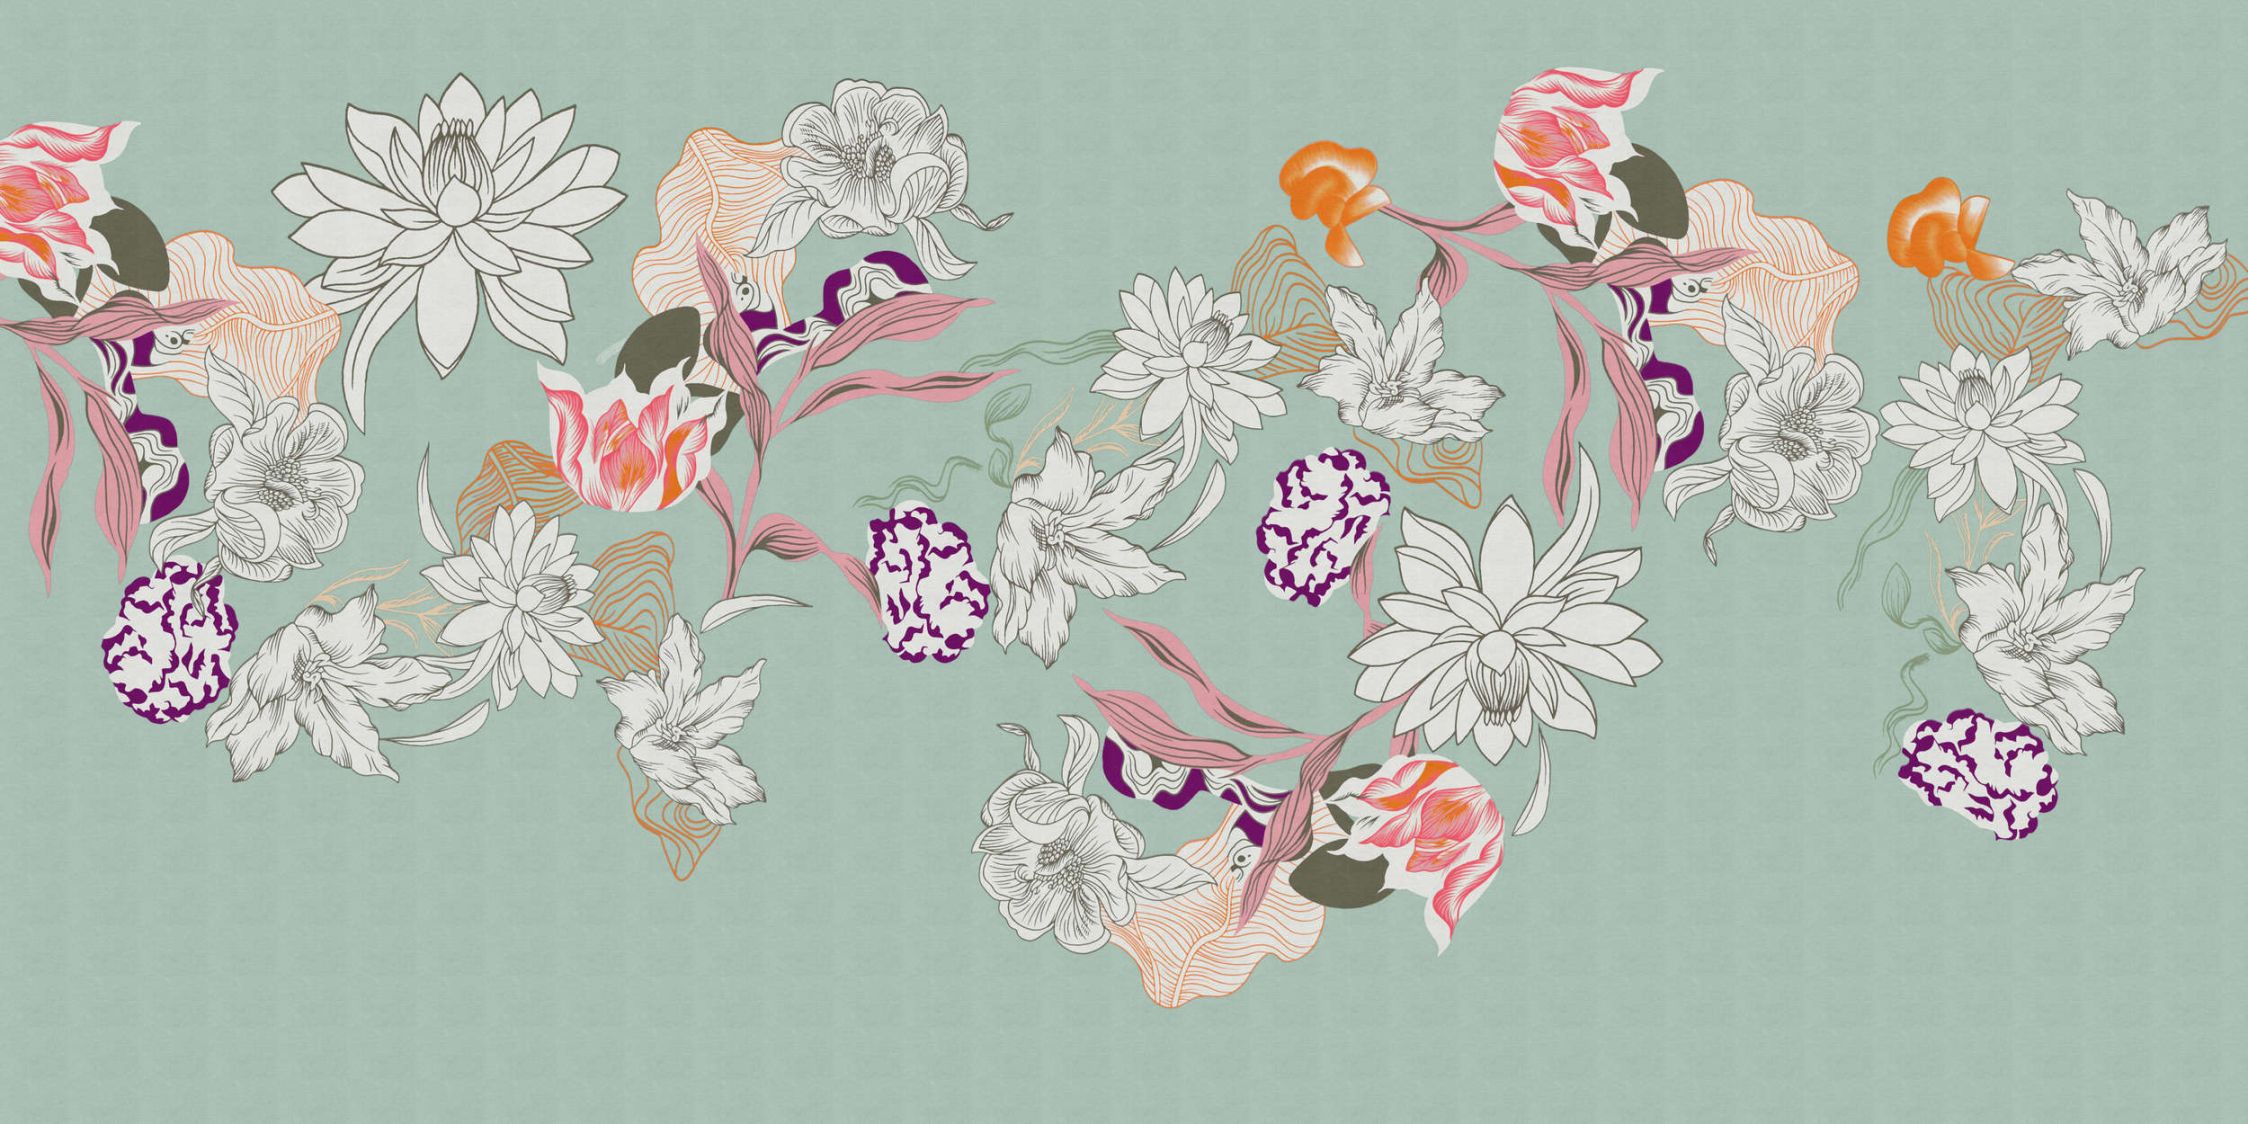             Digital behang »botany 1« - Abstracte bloemmotieven met oranje accenten tegen een subtiele linnen textuur - Soepele, licht glanzende premium non-woven stof
        